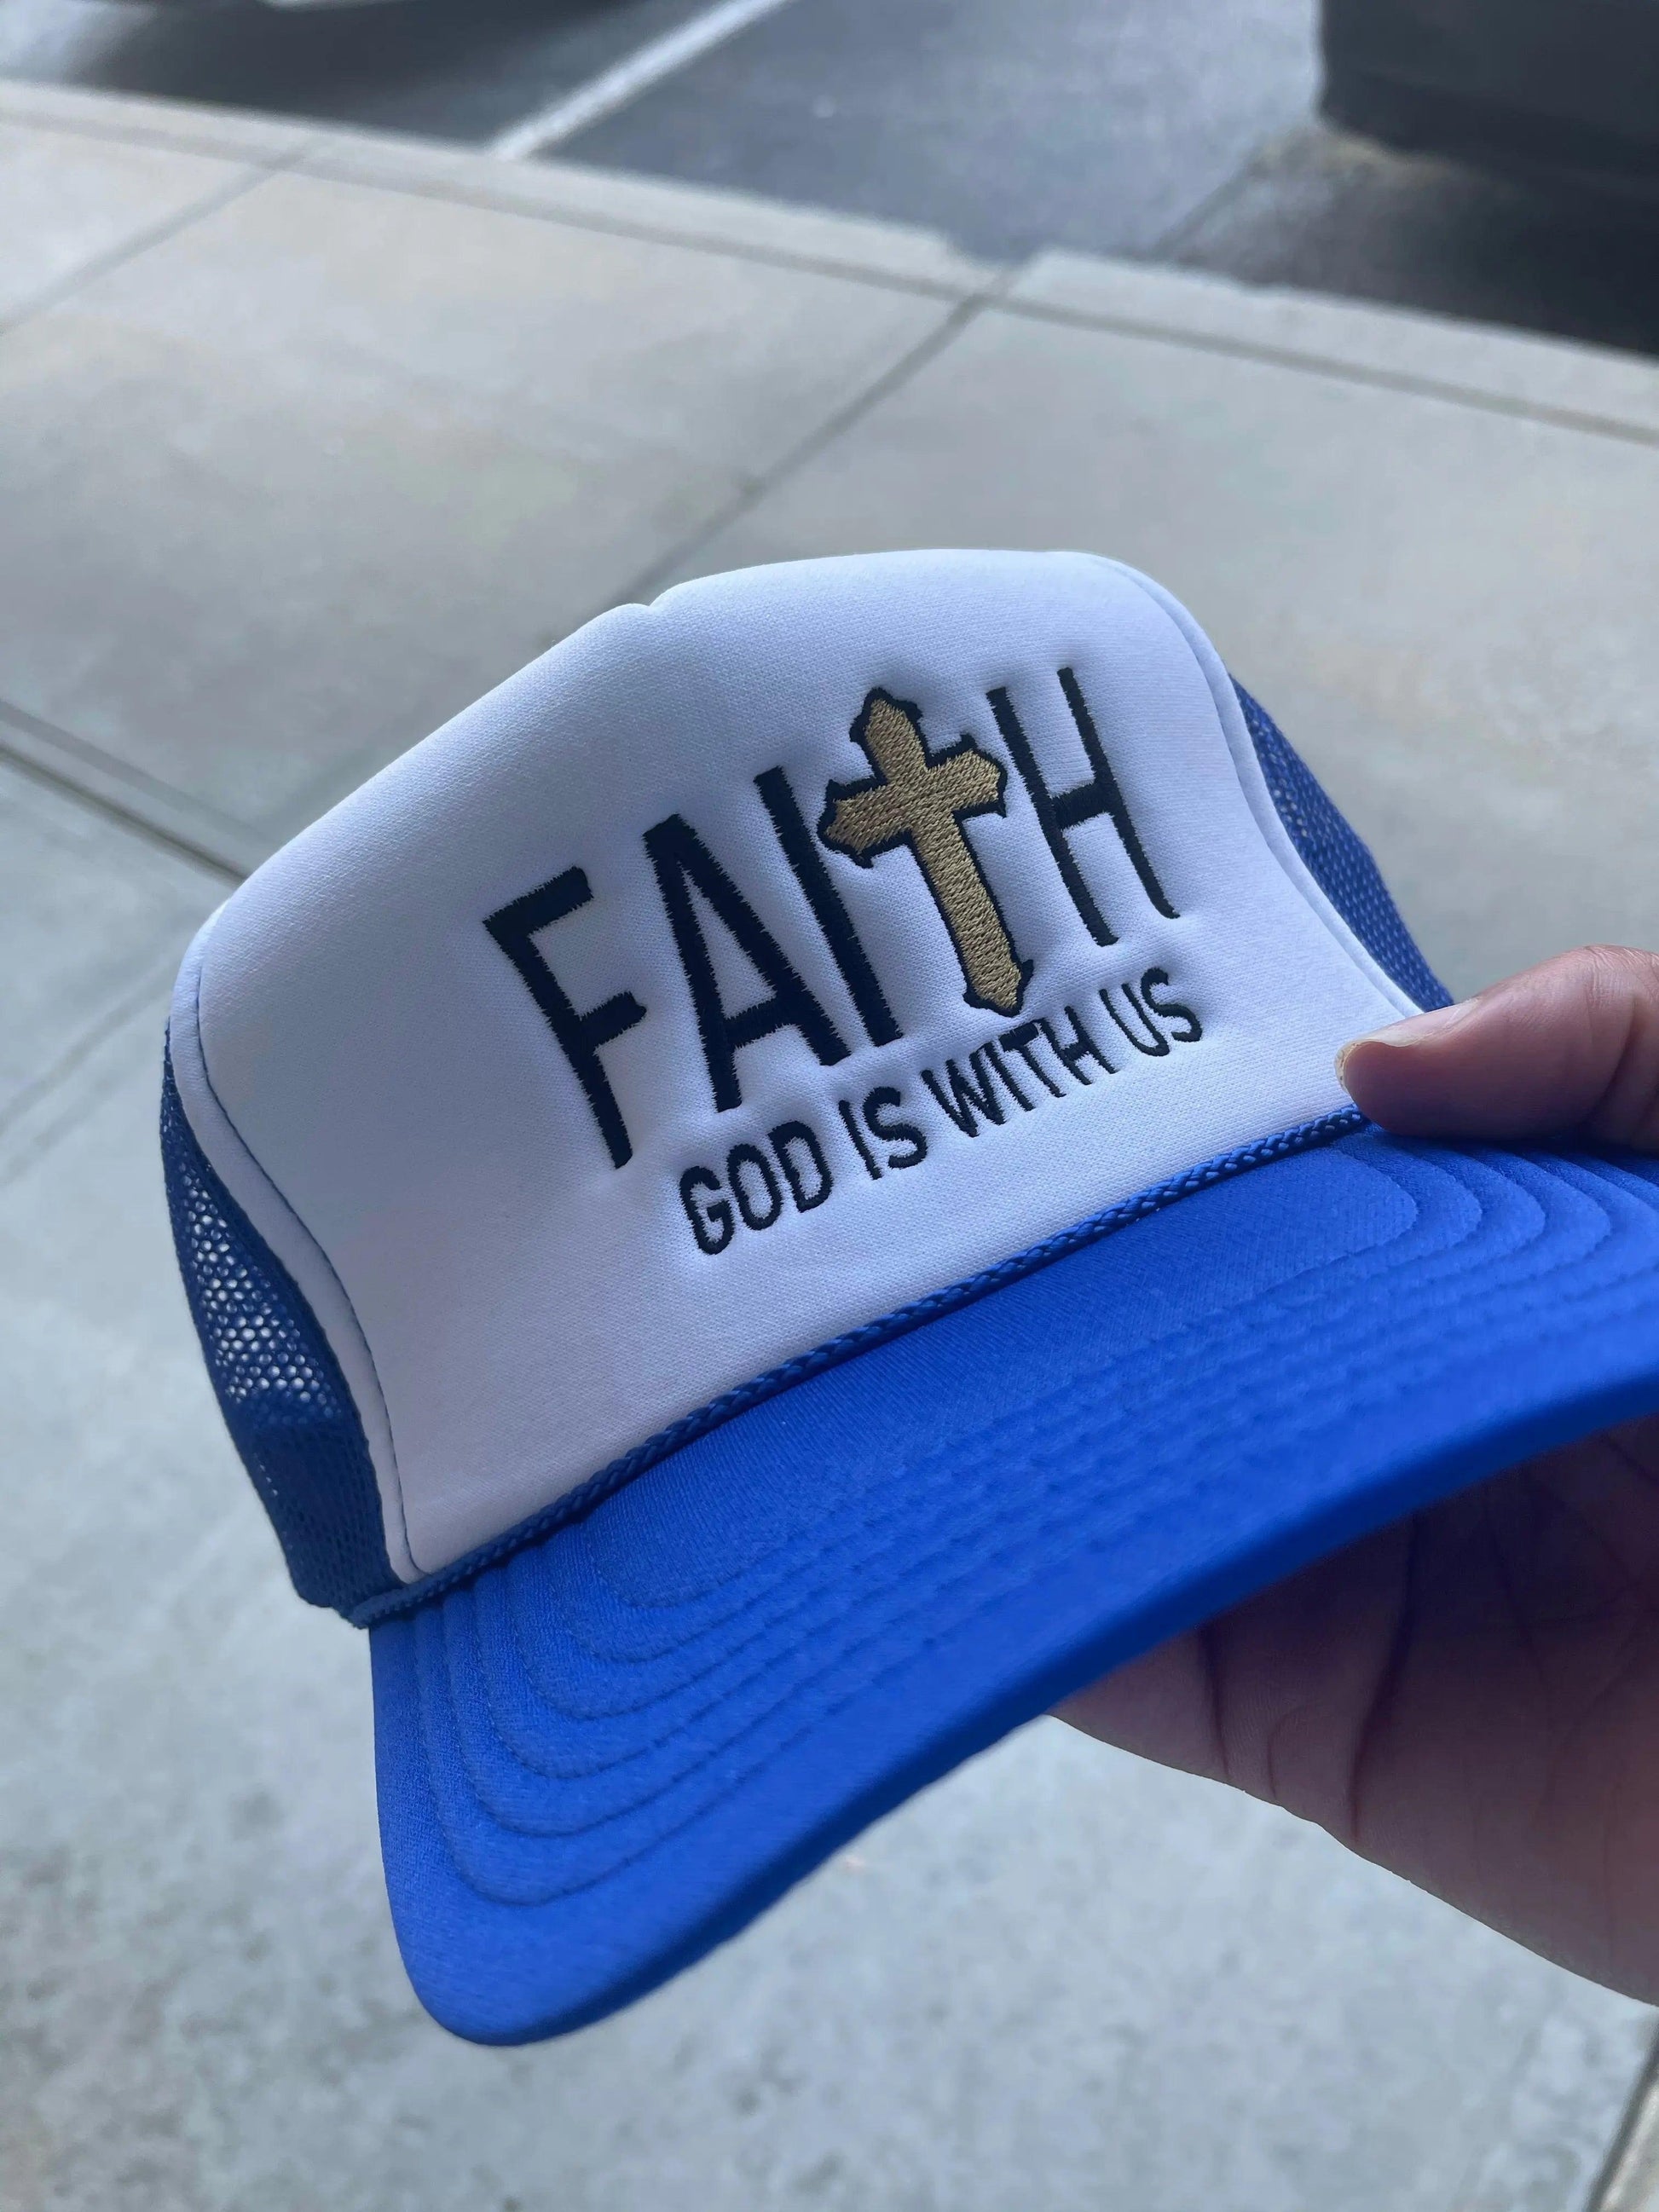 FAITH GOD IS WITH US Royal Blue Trucker Hat - Faith God is with us